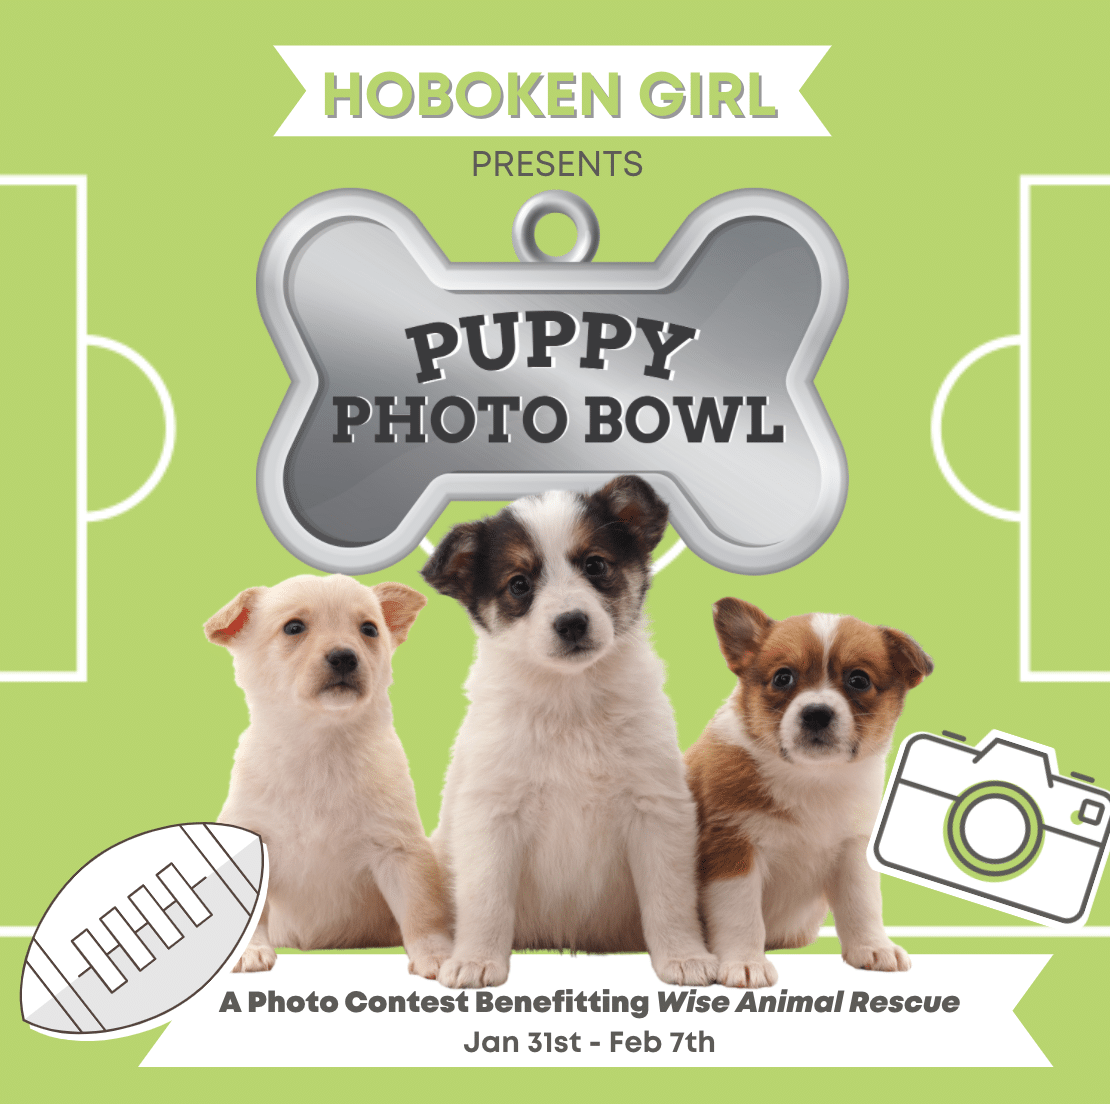 hoboken girl puppy photo bowl 2021 contest